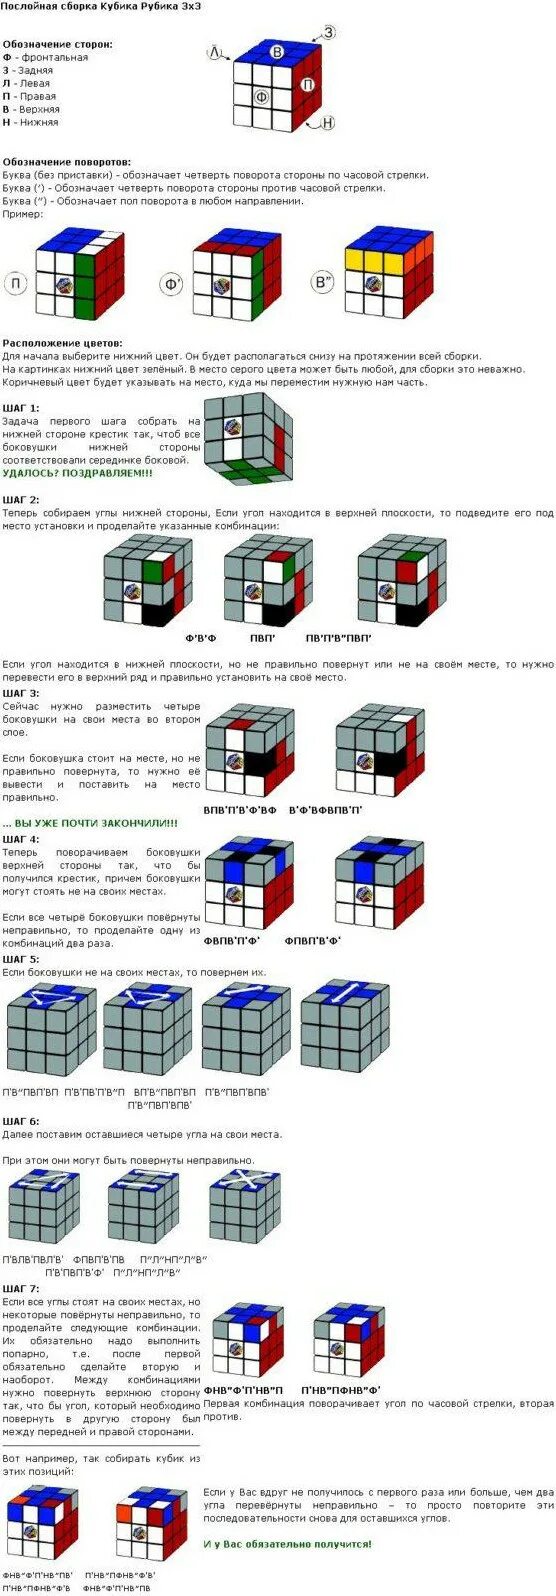 Инструкция по сборке кубика. Схема сборки кубика Рубика 3 на 3. Схема сбора кубика Рубика 3х3. Схема кубика Рубика 3 на 3. Схема сборки кубика Рубика 3х3 первый слой.